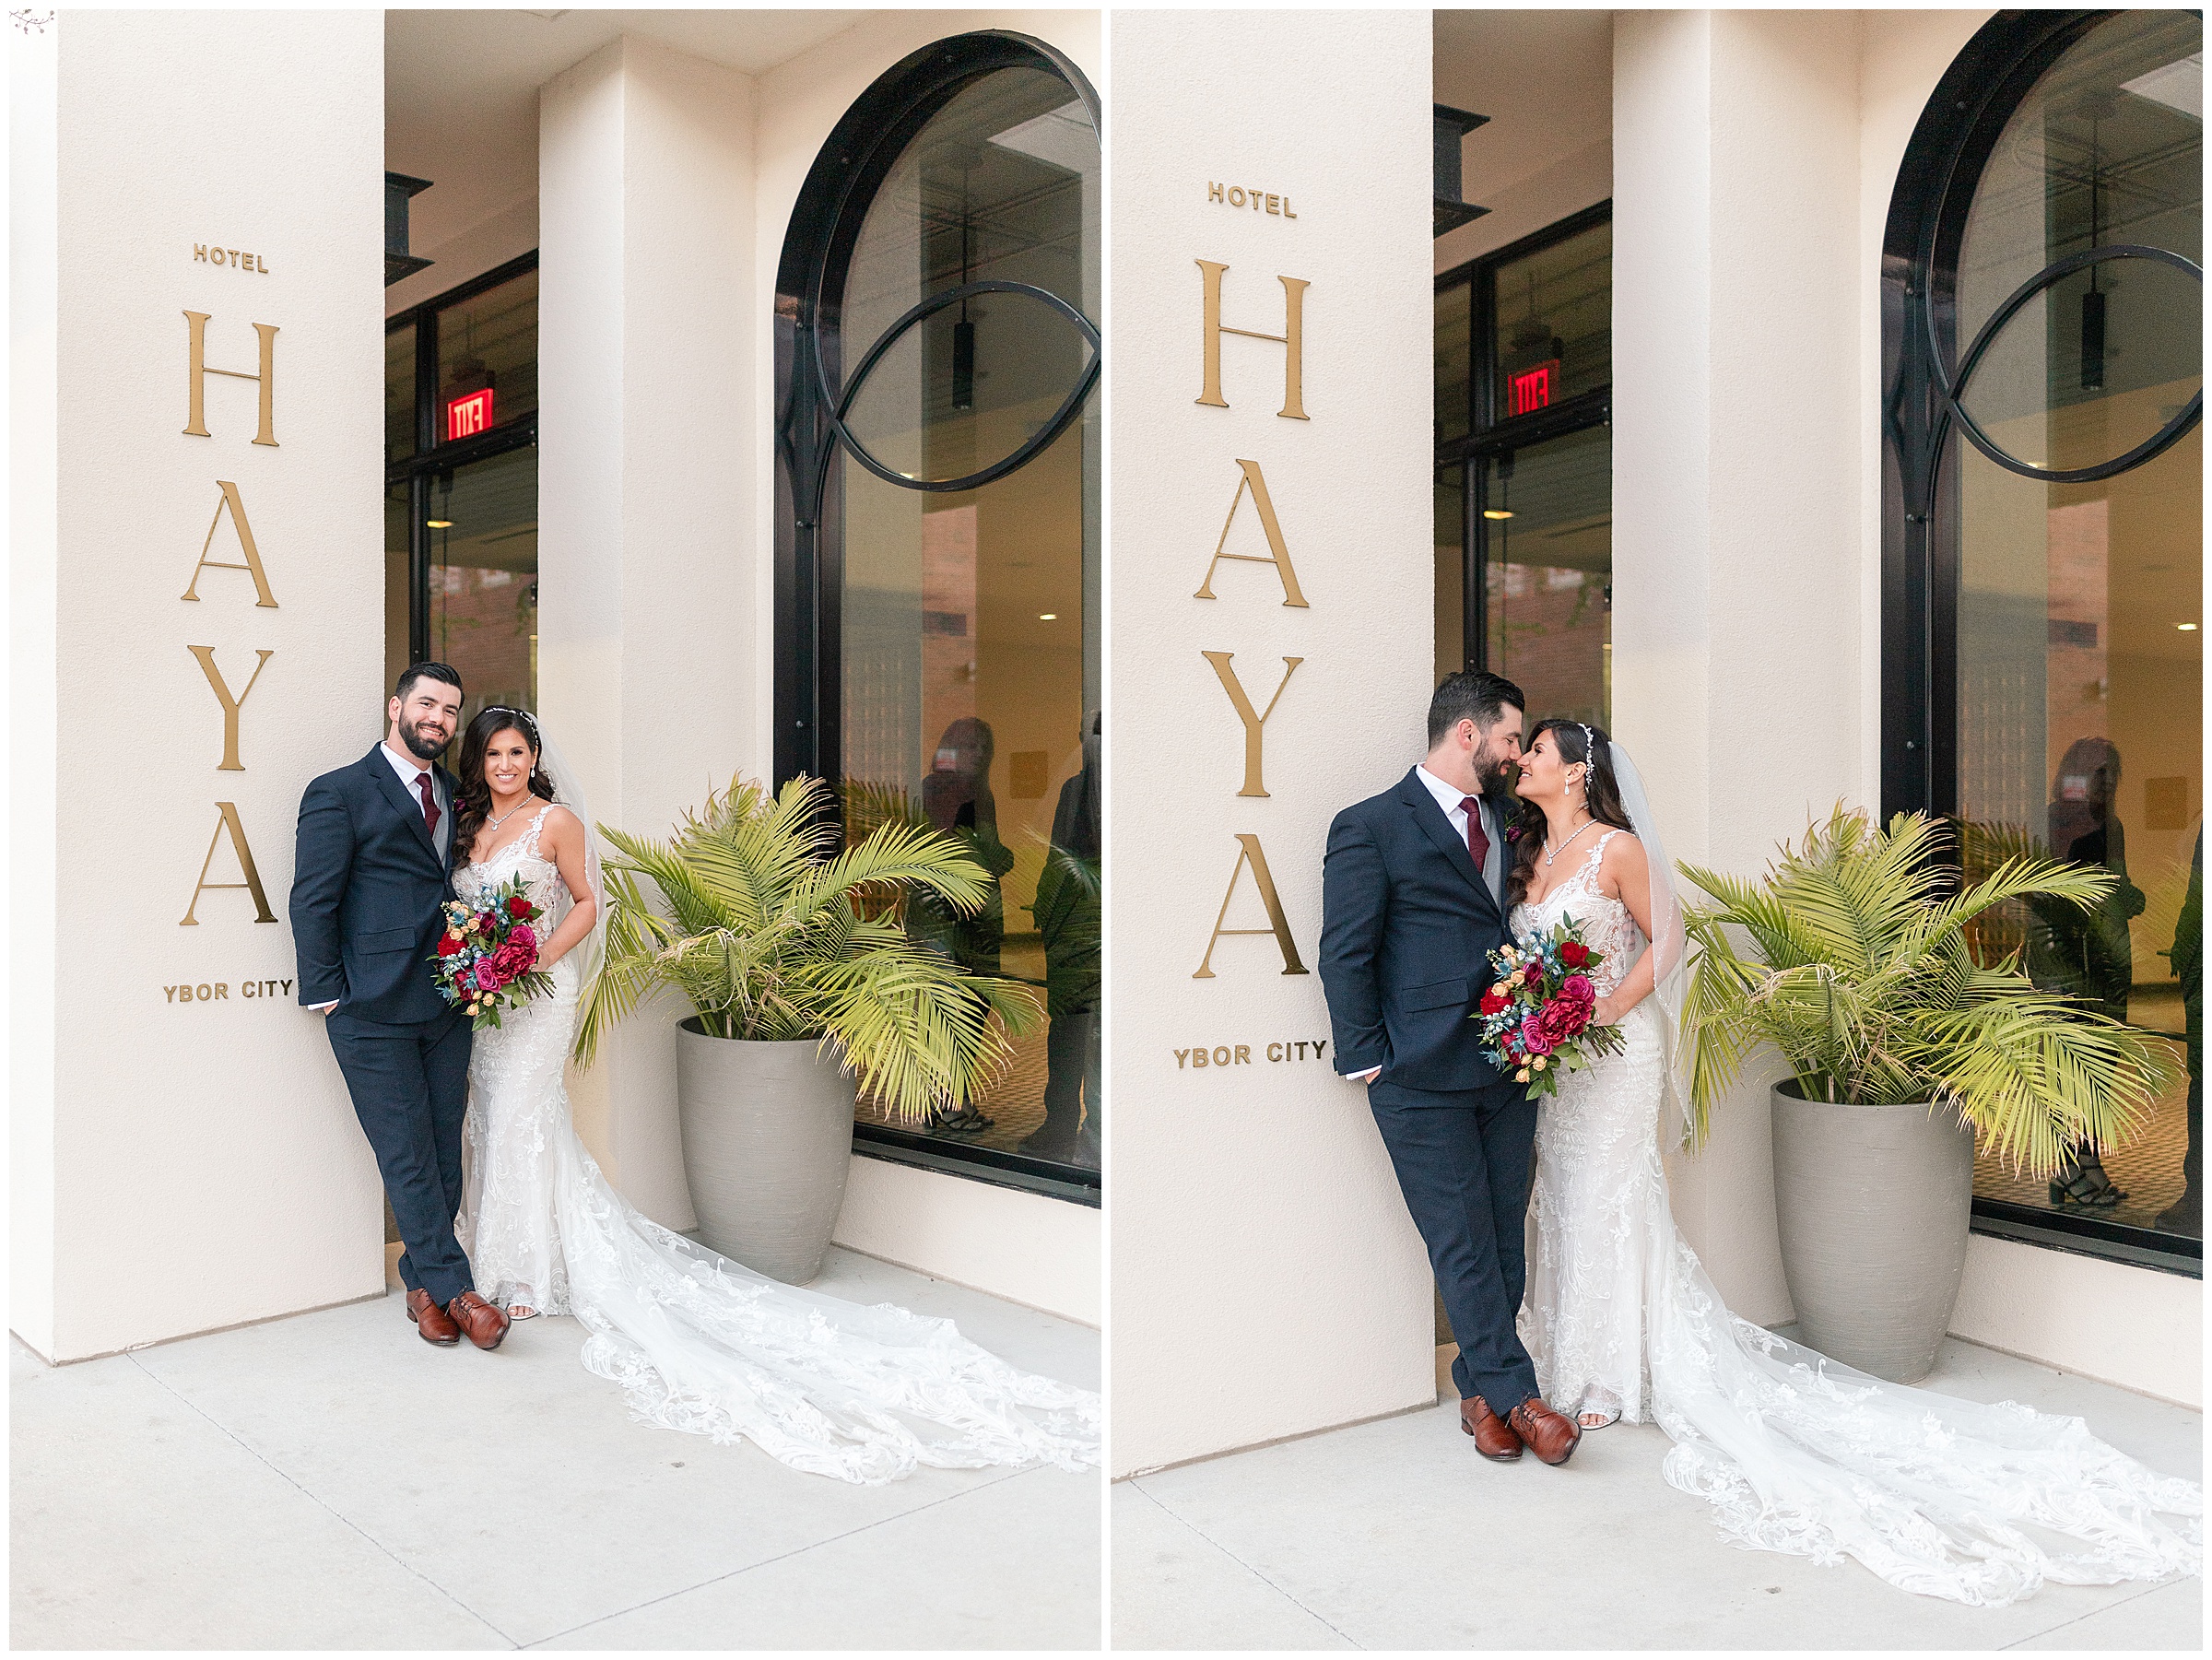 Hotel Haya Wedding Bride and Groom Photos